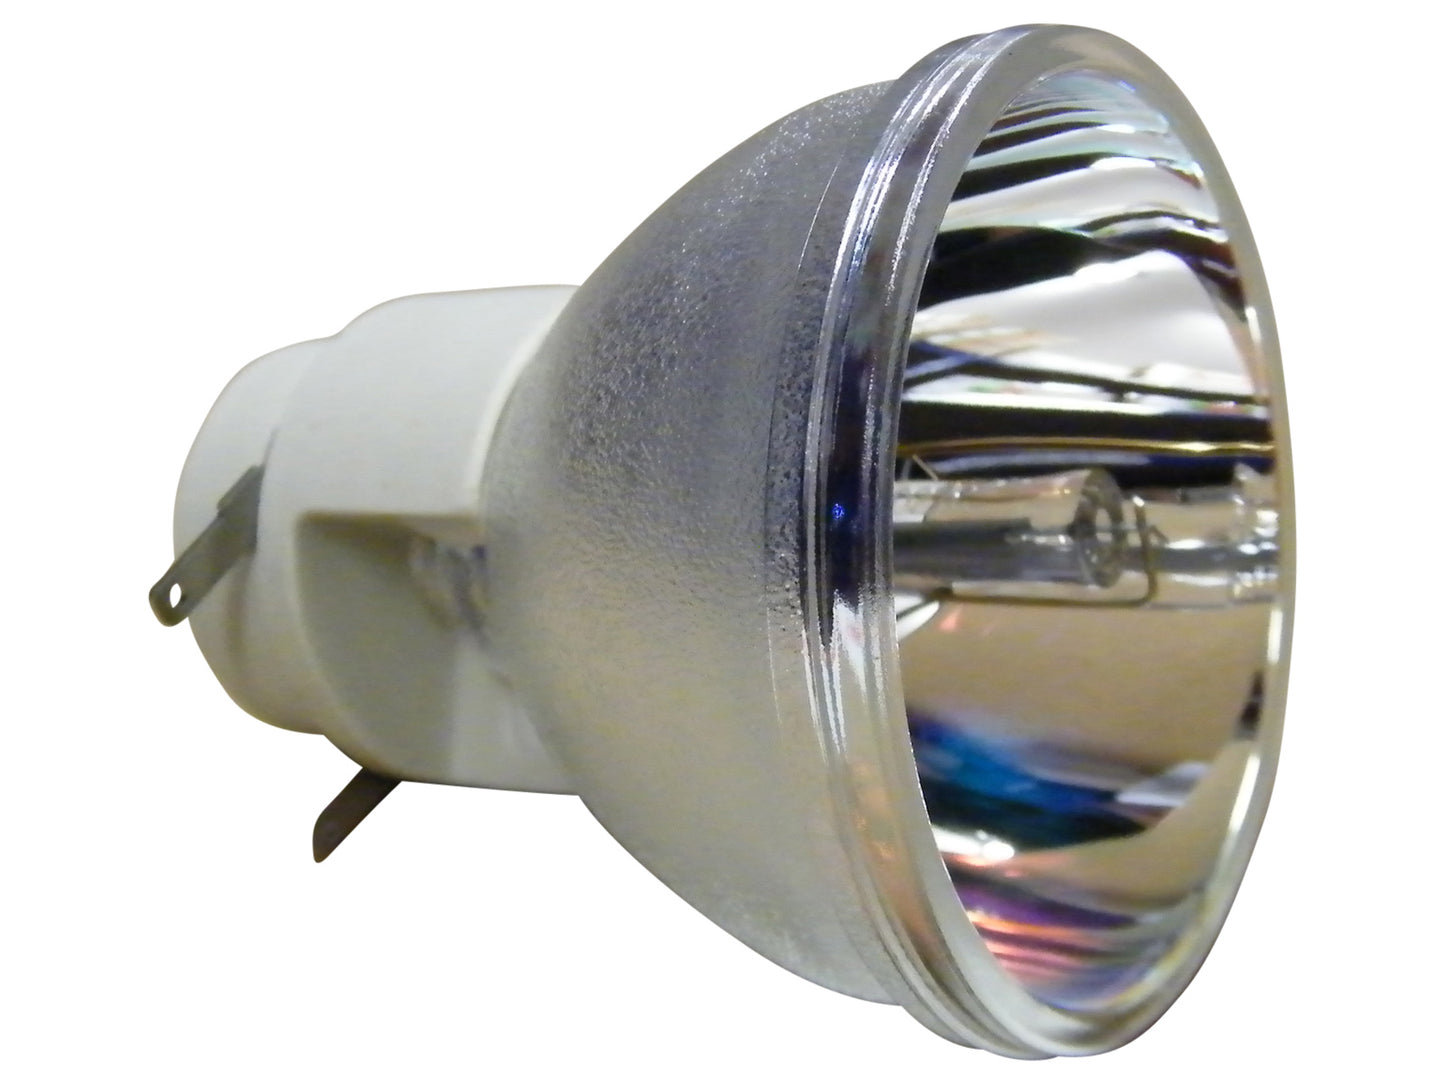 OSRAM Ersatzlampe P-VIP 190/0.8 E20.8 | Beamerlampe für diverse Projektoren - Bild 1